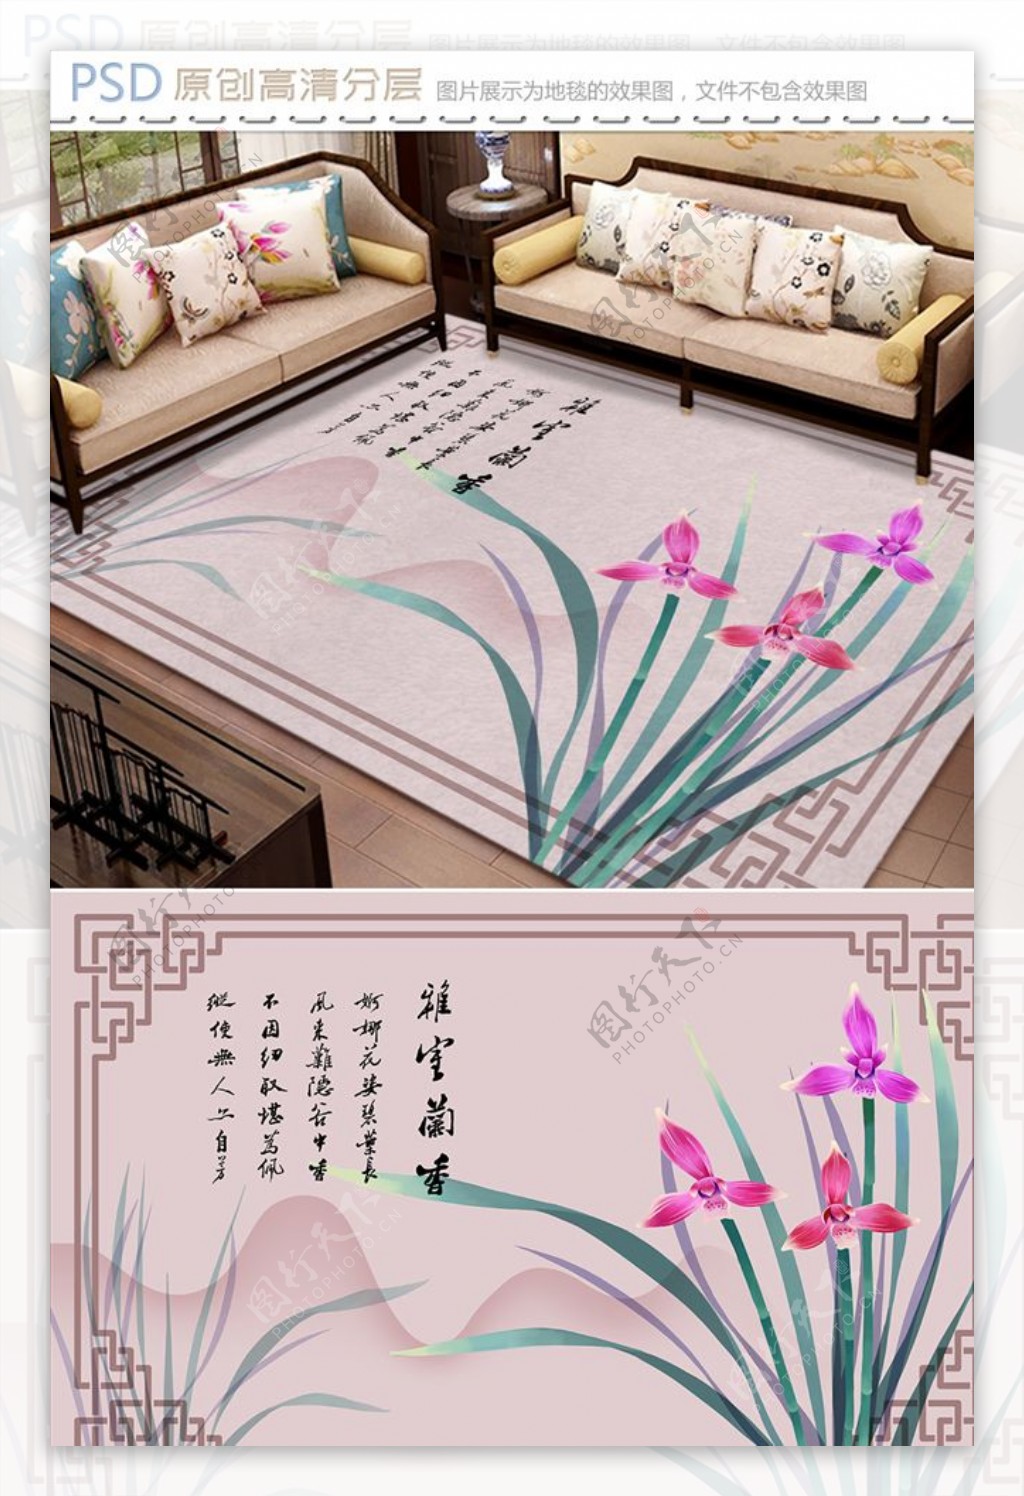 雅室兰香新中式地毯设计